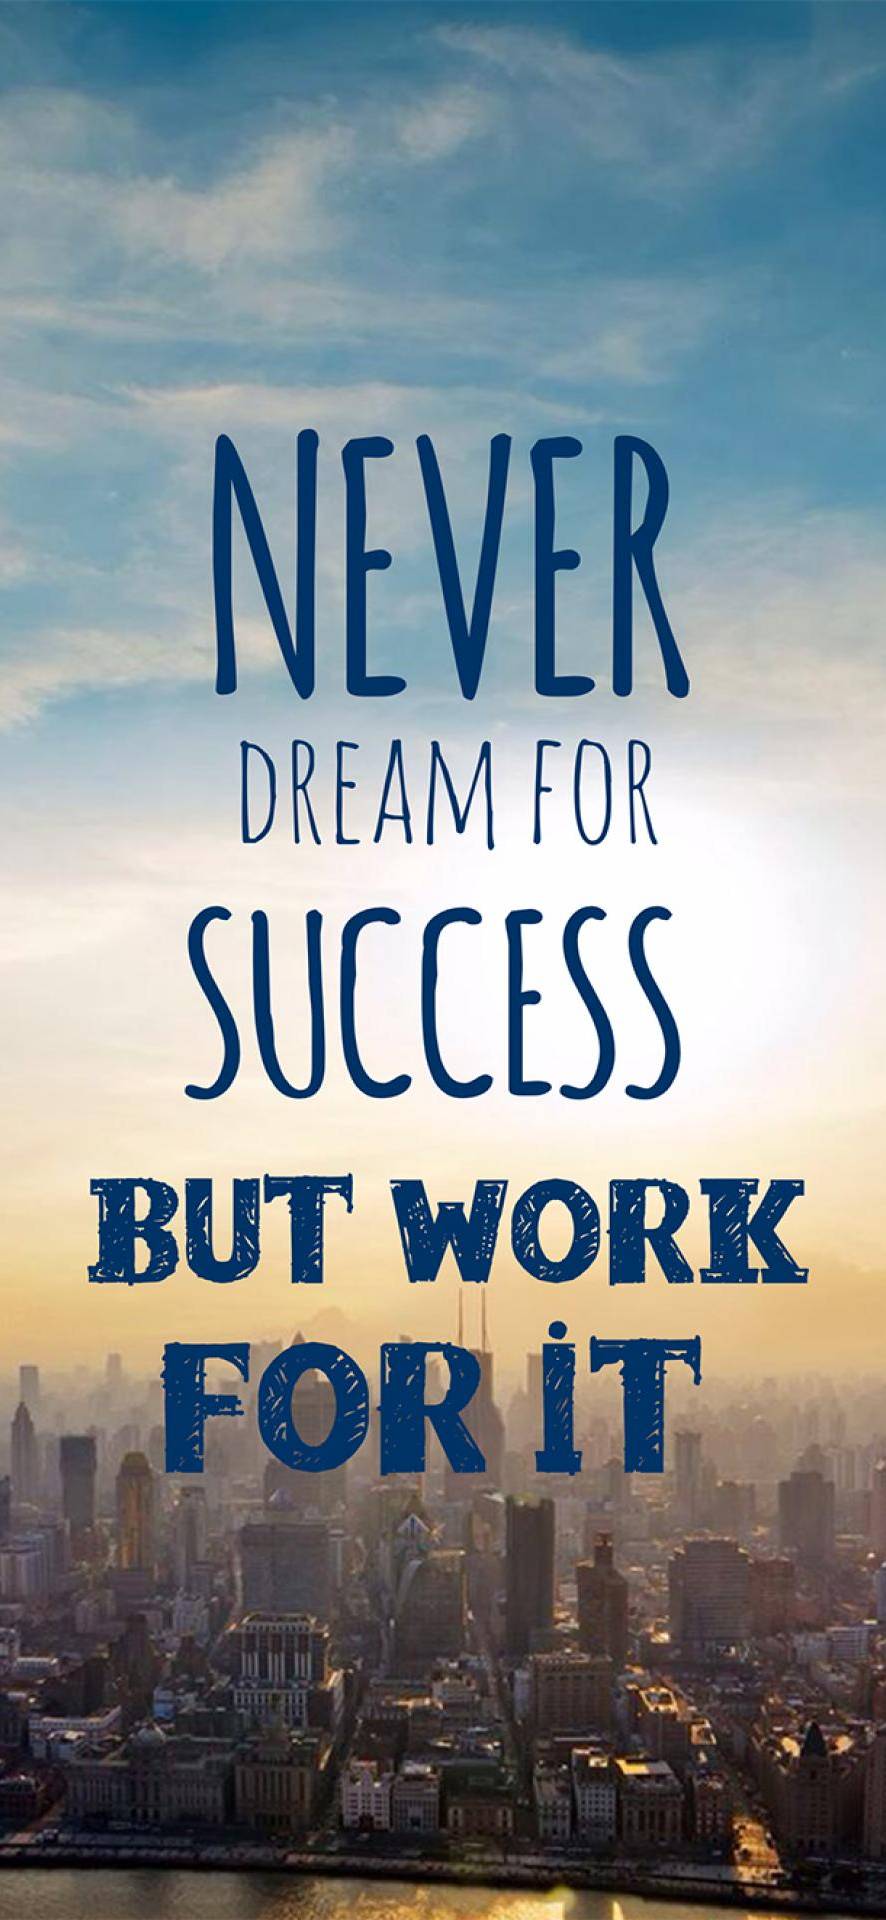 Work For Success - Motivational Wallpaper